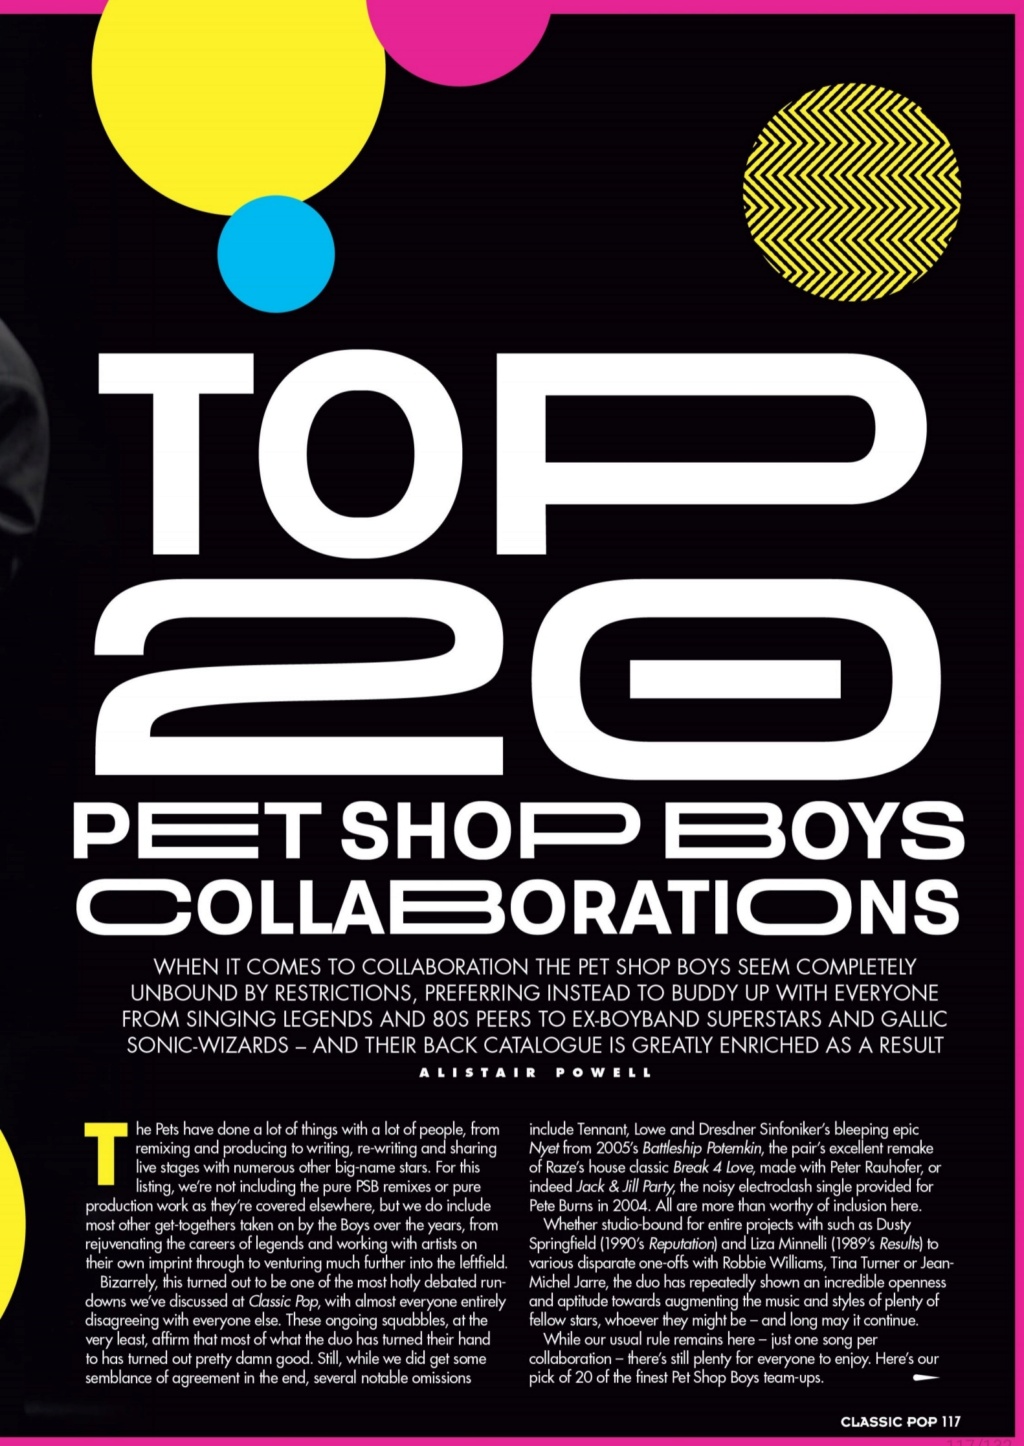 Pet Shop Boys - Presse - Page 3 Screen20